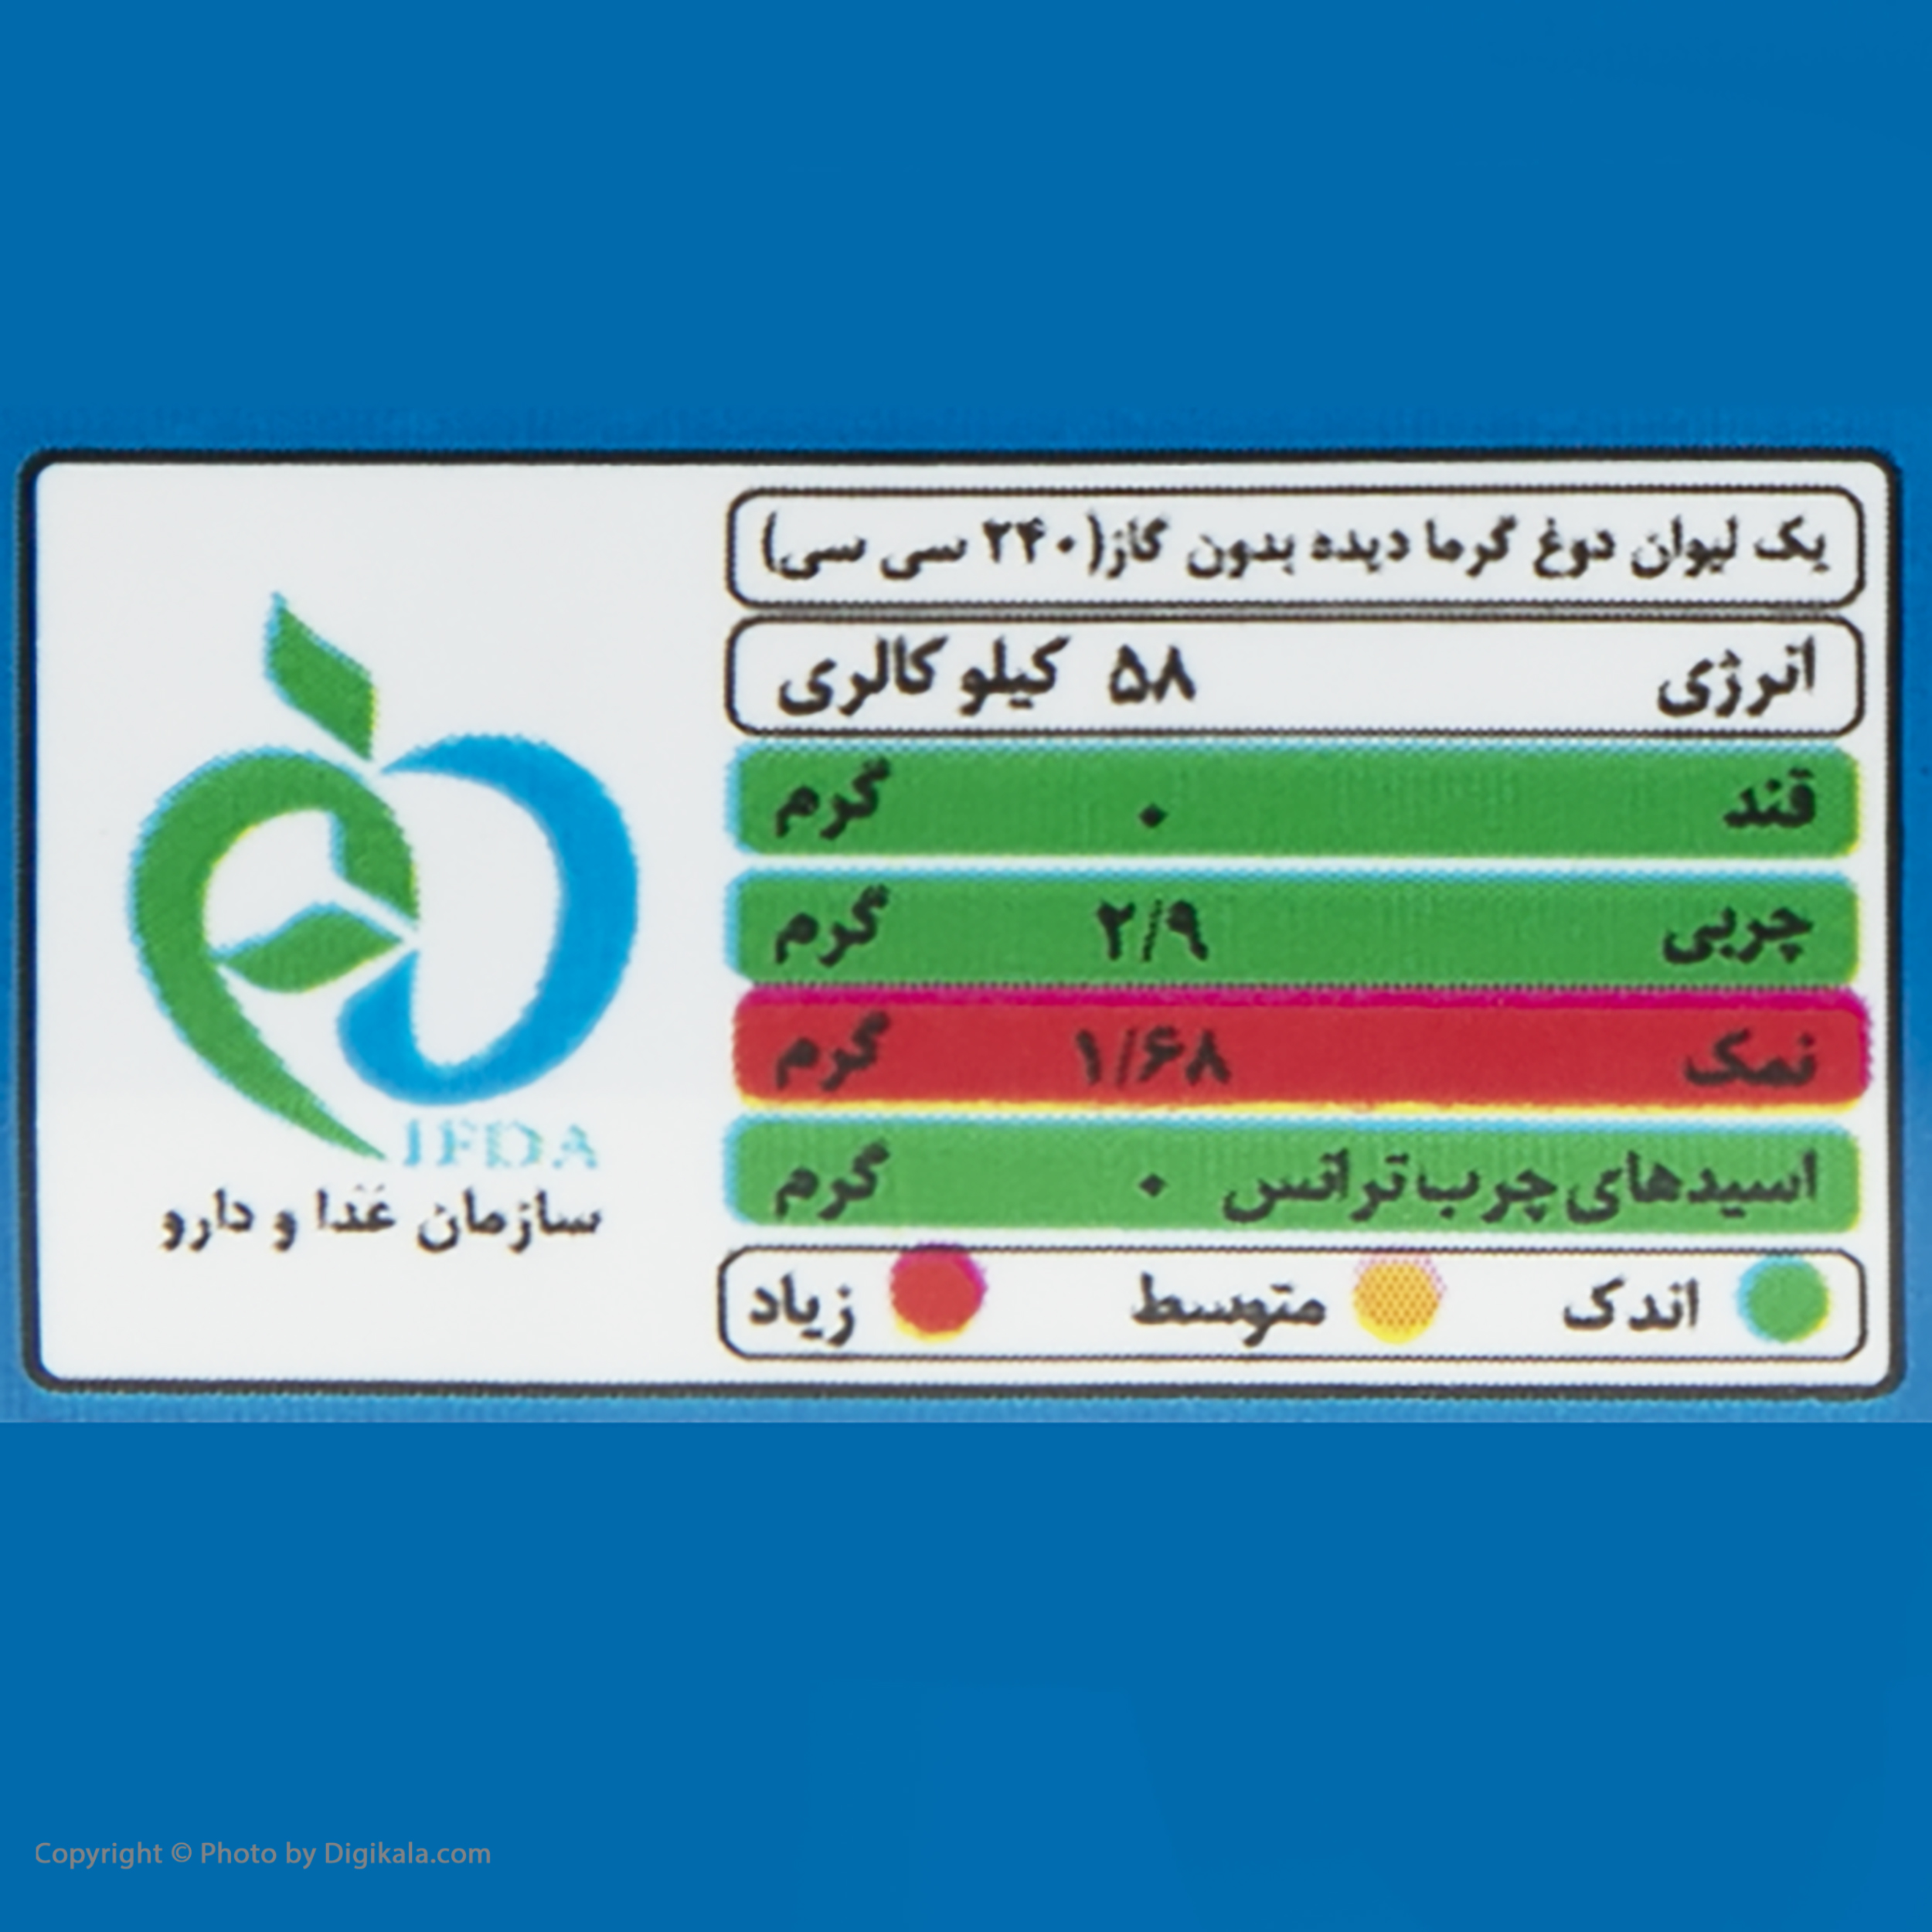 دوغ بدون گاز فیروزکوه با طعم خیار و پونه - 1.3 لیتردر ارزانترین فروشگاه اینترنتی ایران ارزان